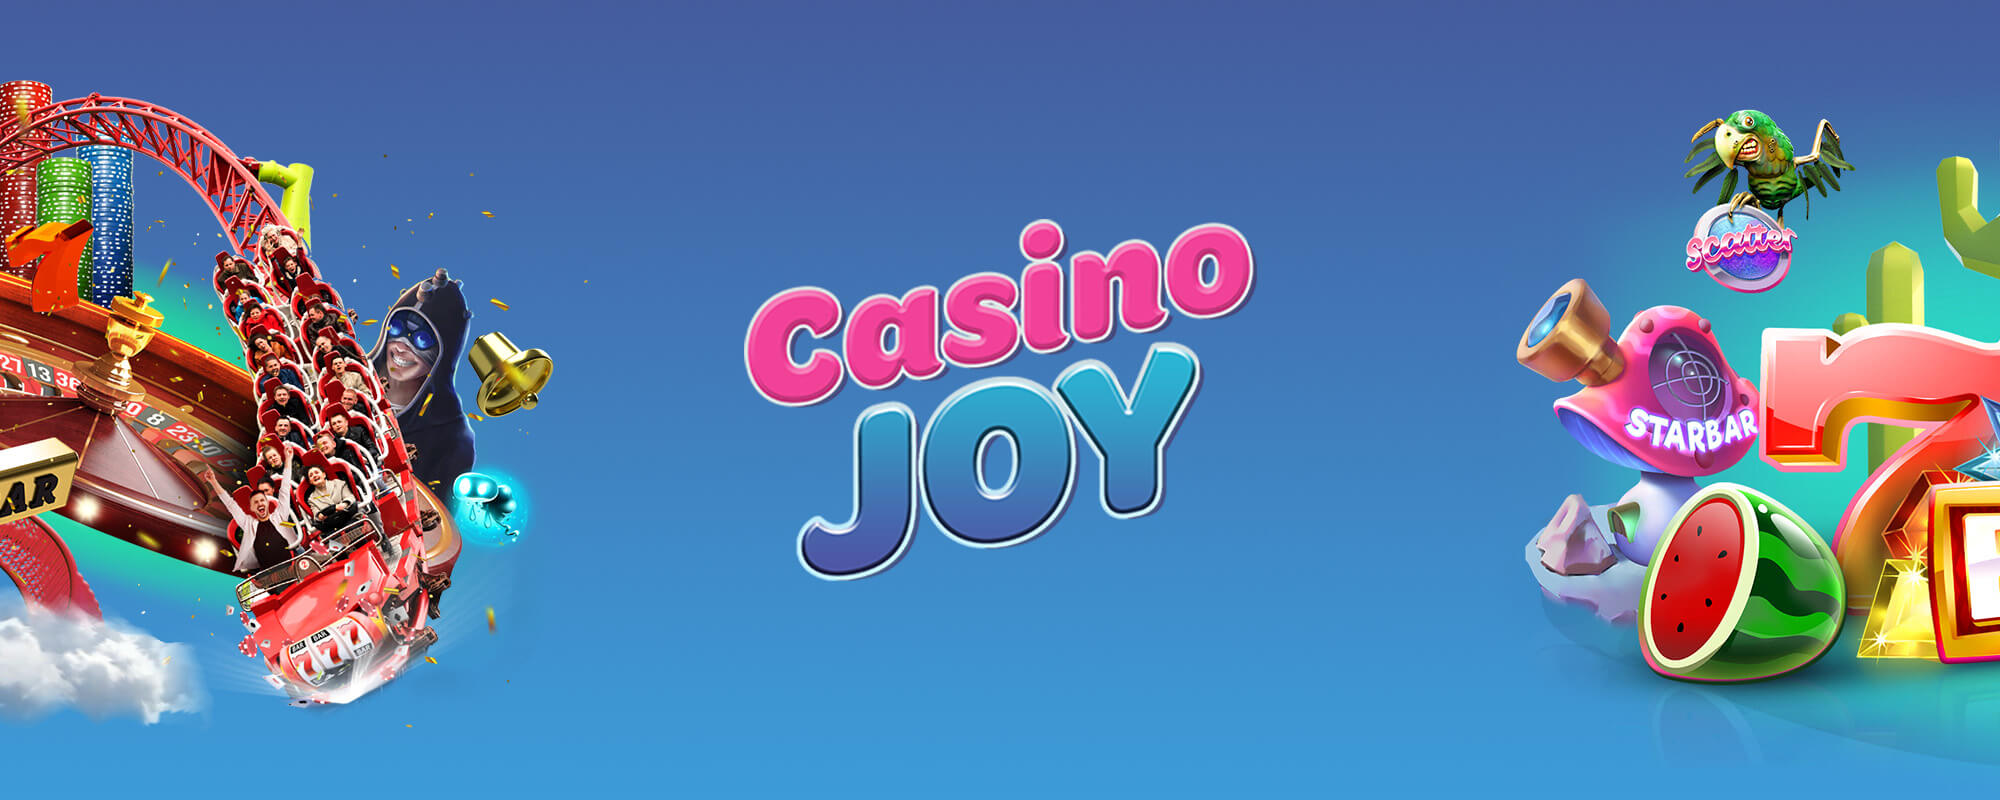 Casino Joy Joulubonukset 2018